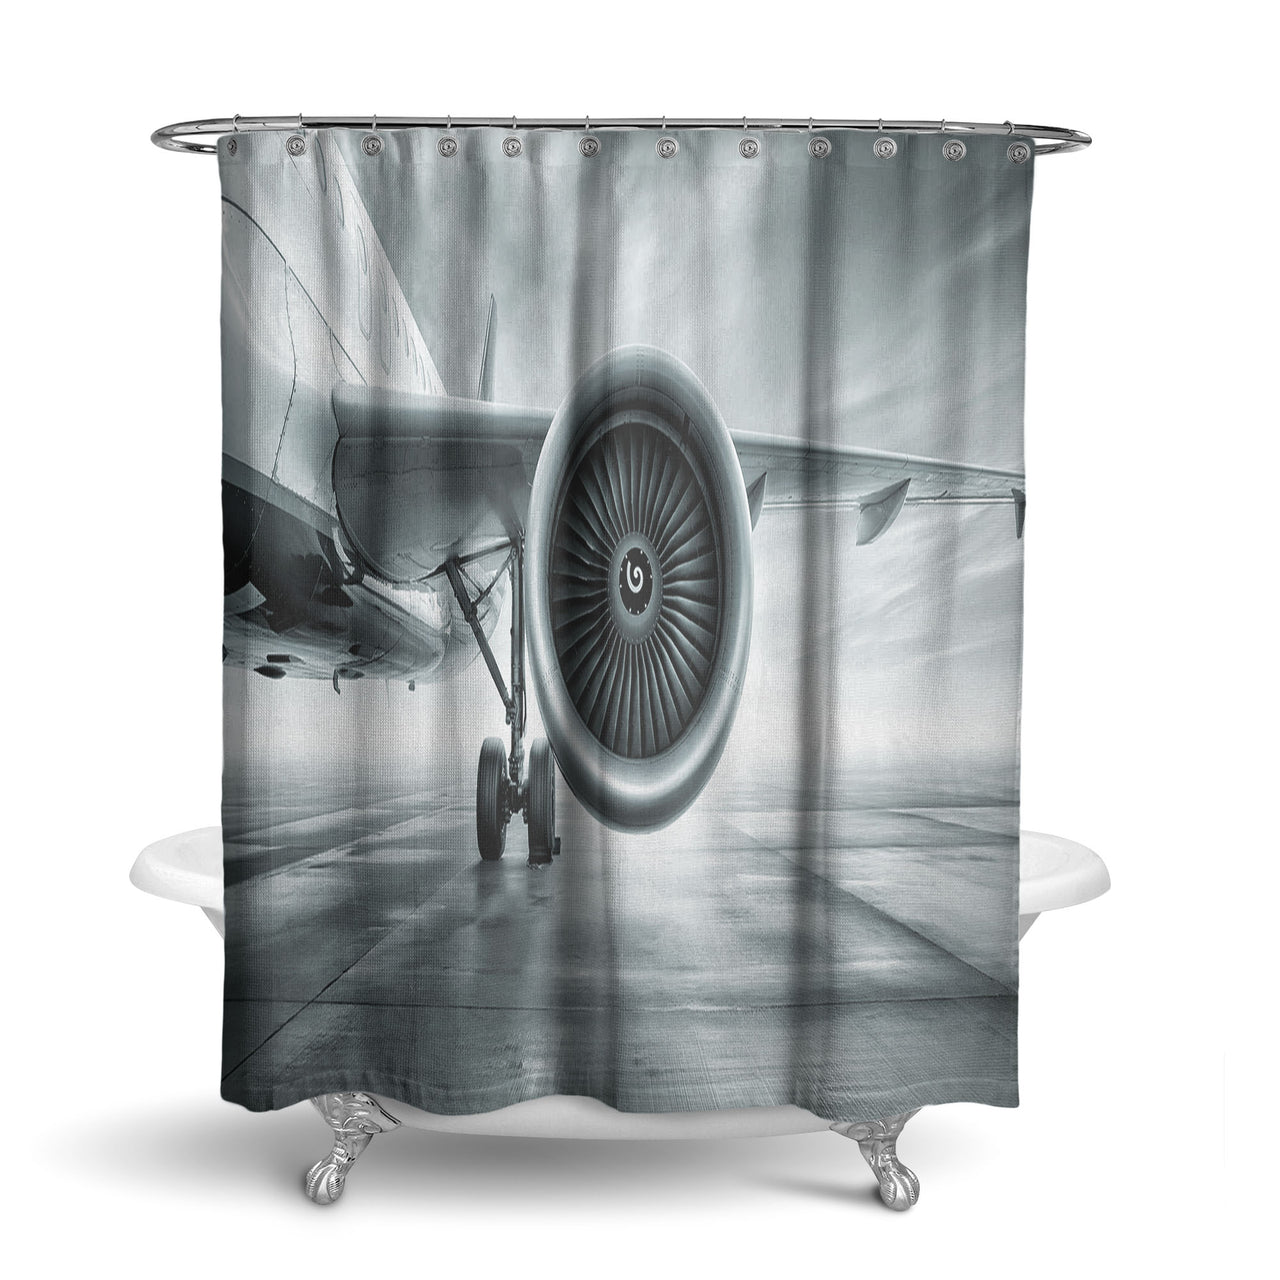 Super Cool Airliner Jet Engine Designed Shower Curtains